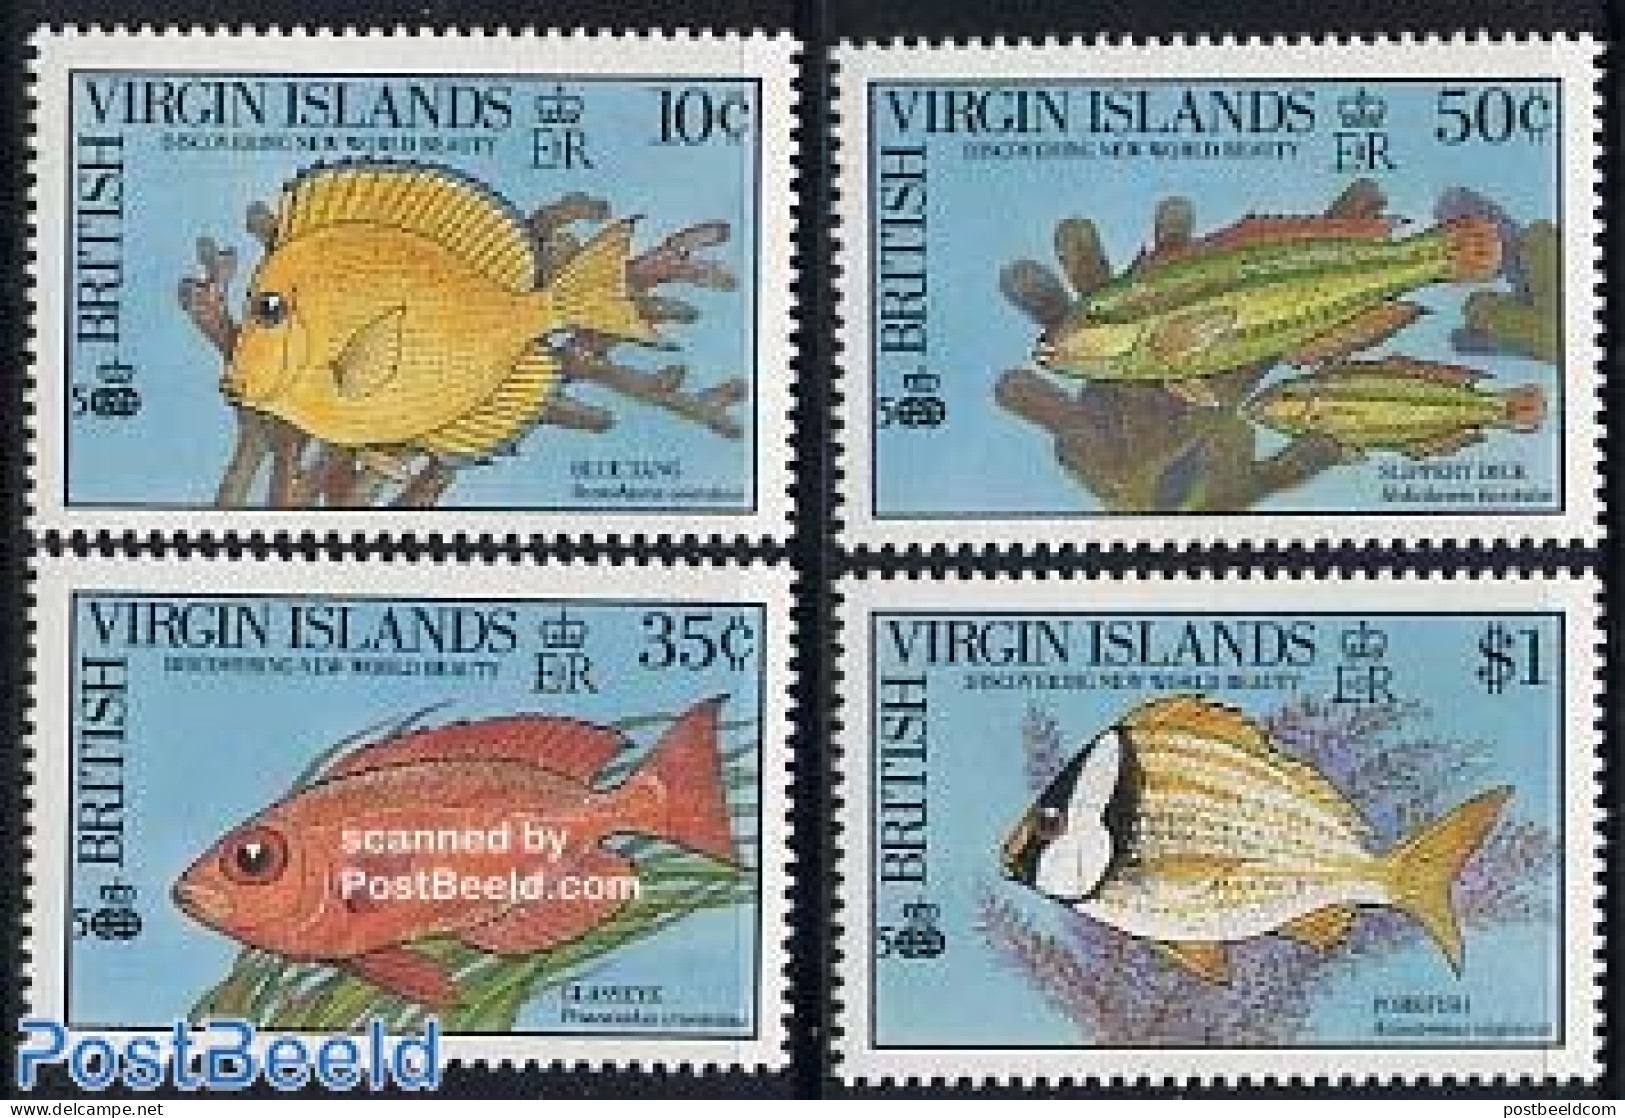 Virgin Islands 1990 Fish 4v, Mint NH, Nature - Fish - Fische